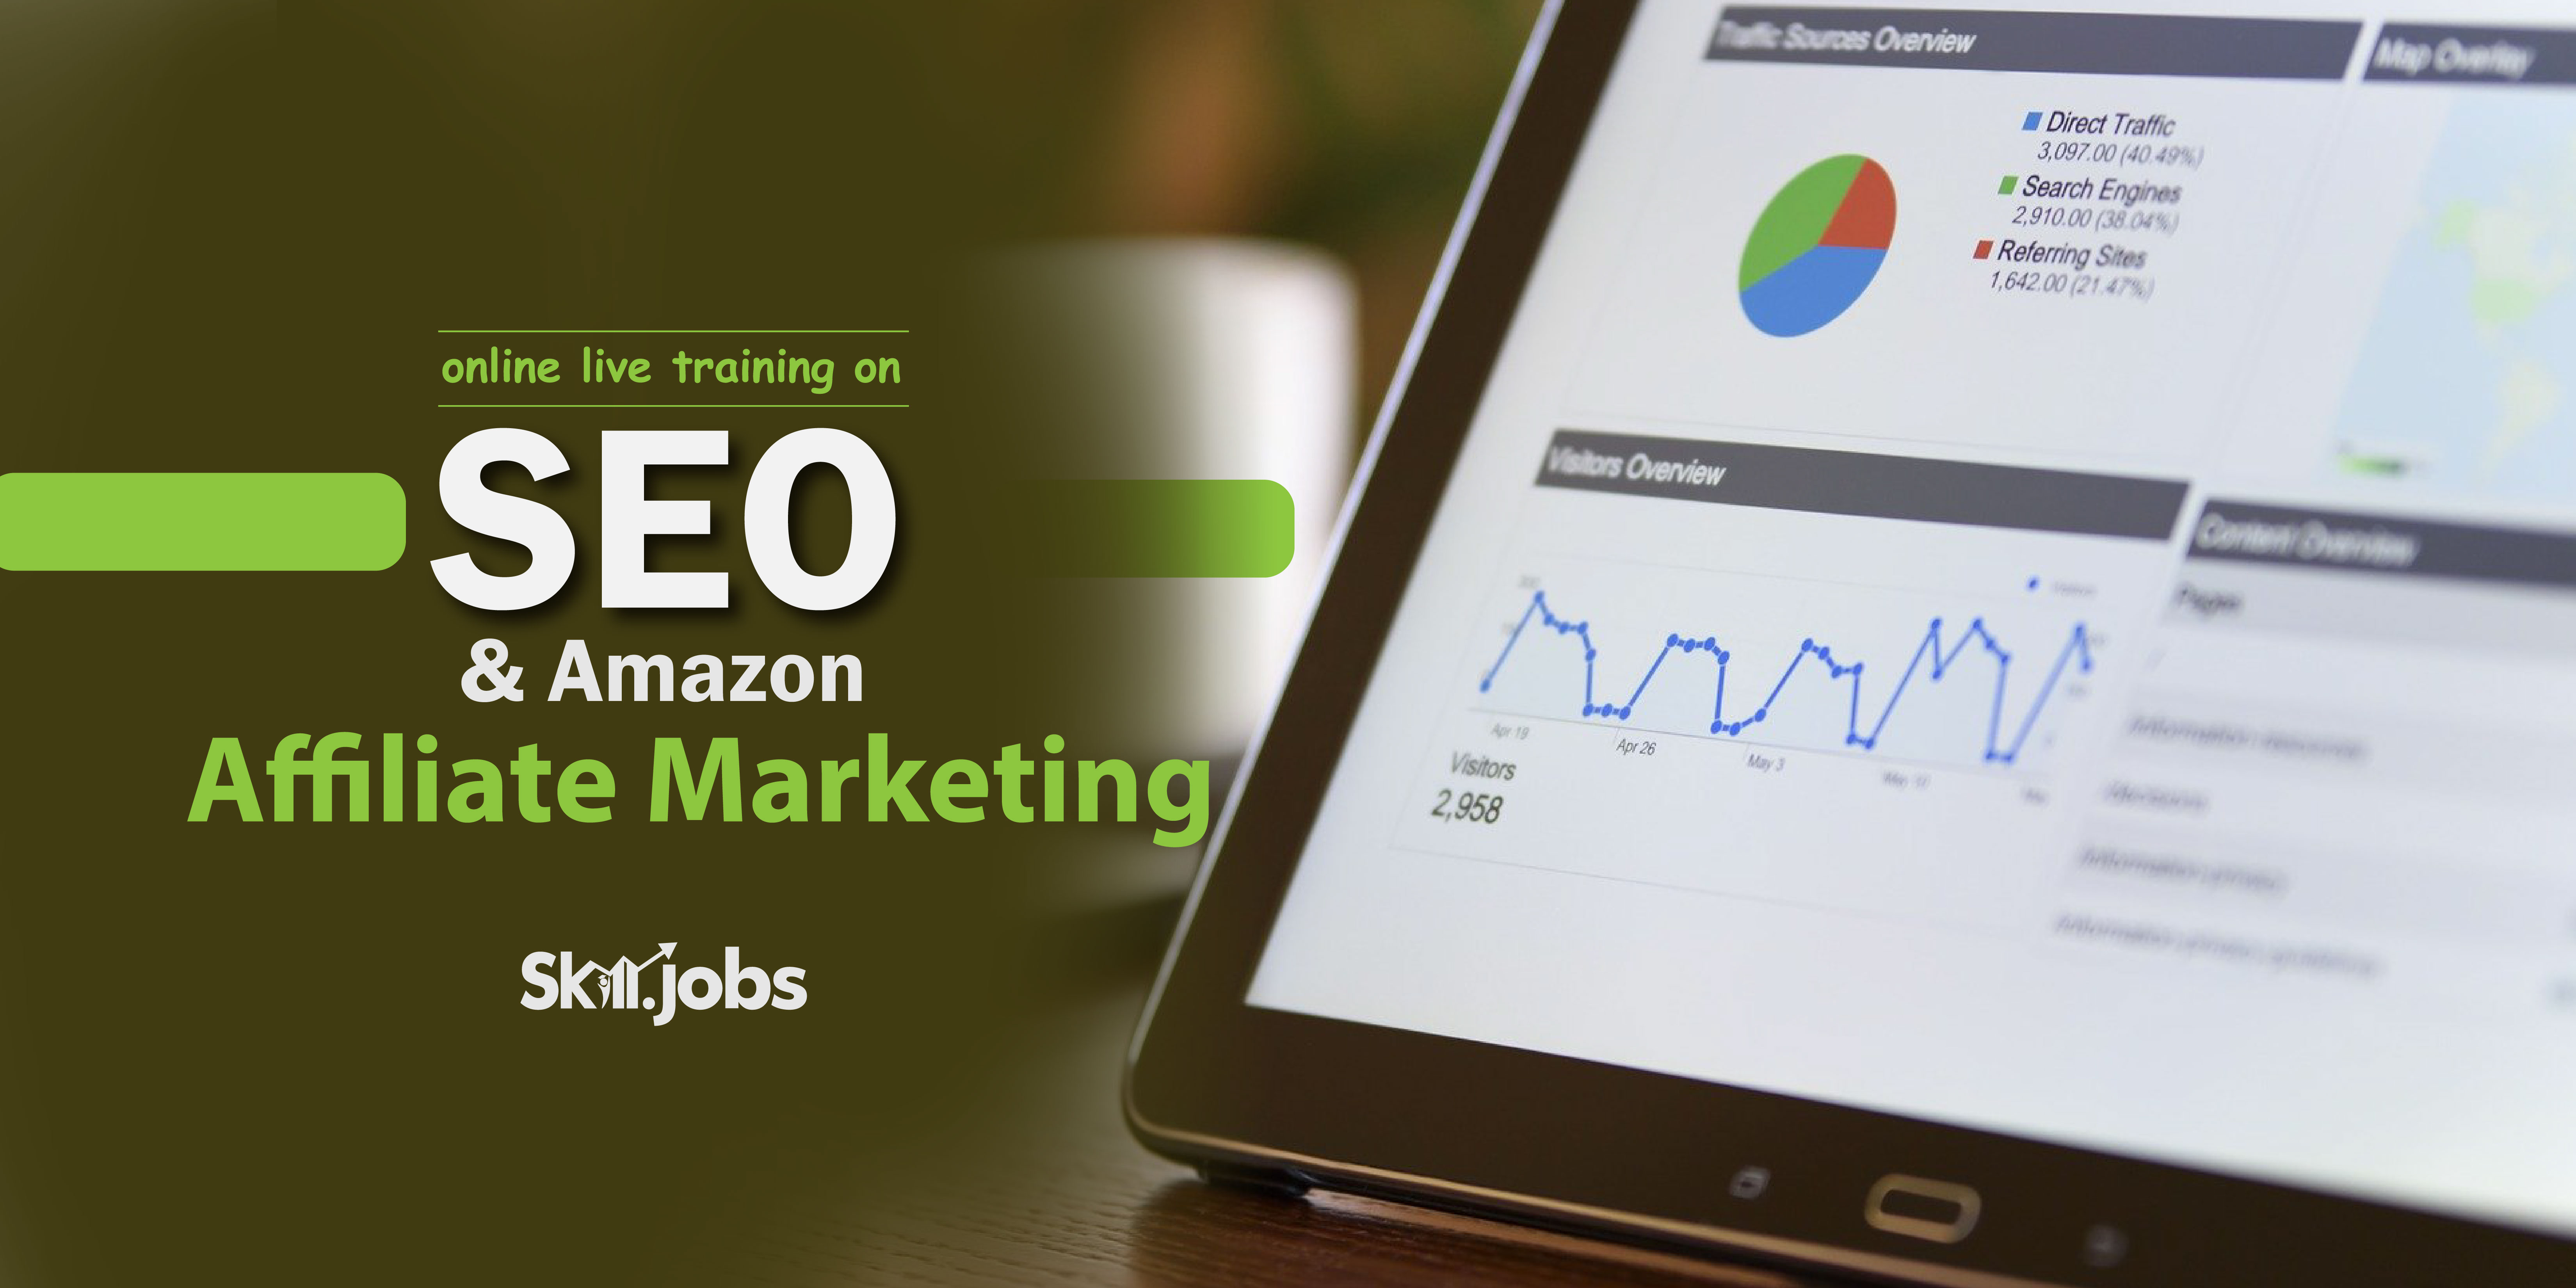 Online Live Training on SEO & Amazon Affiliate Marketing